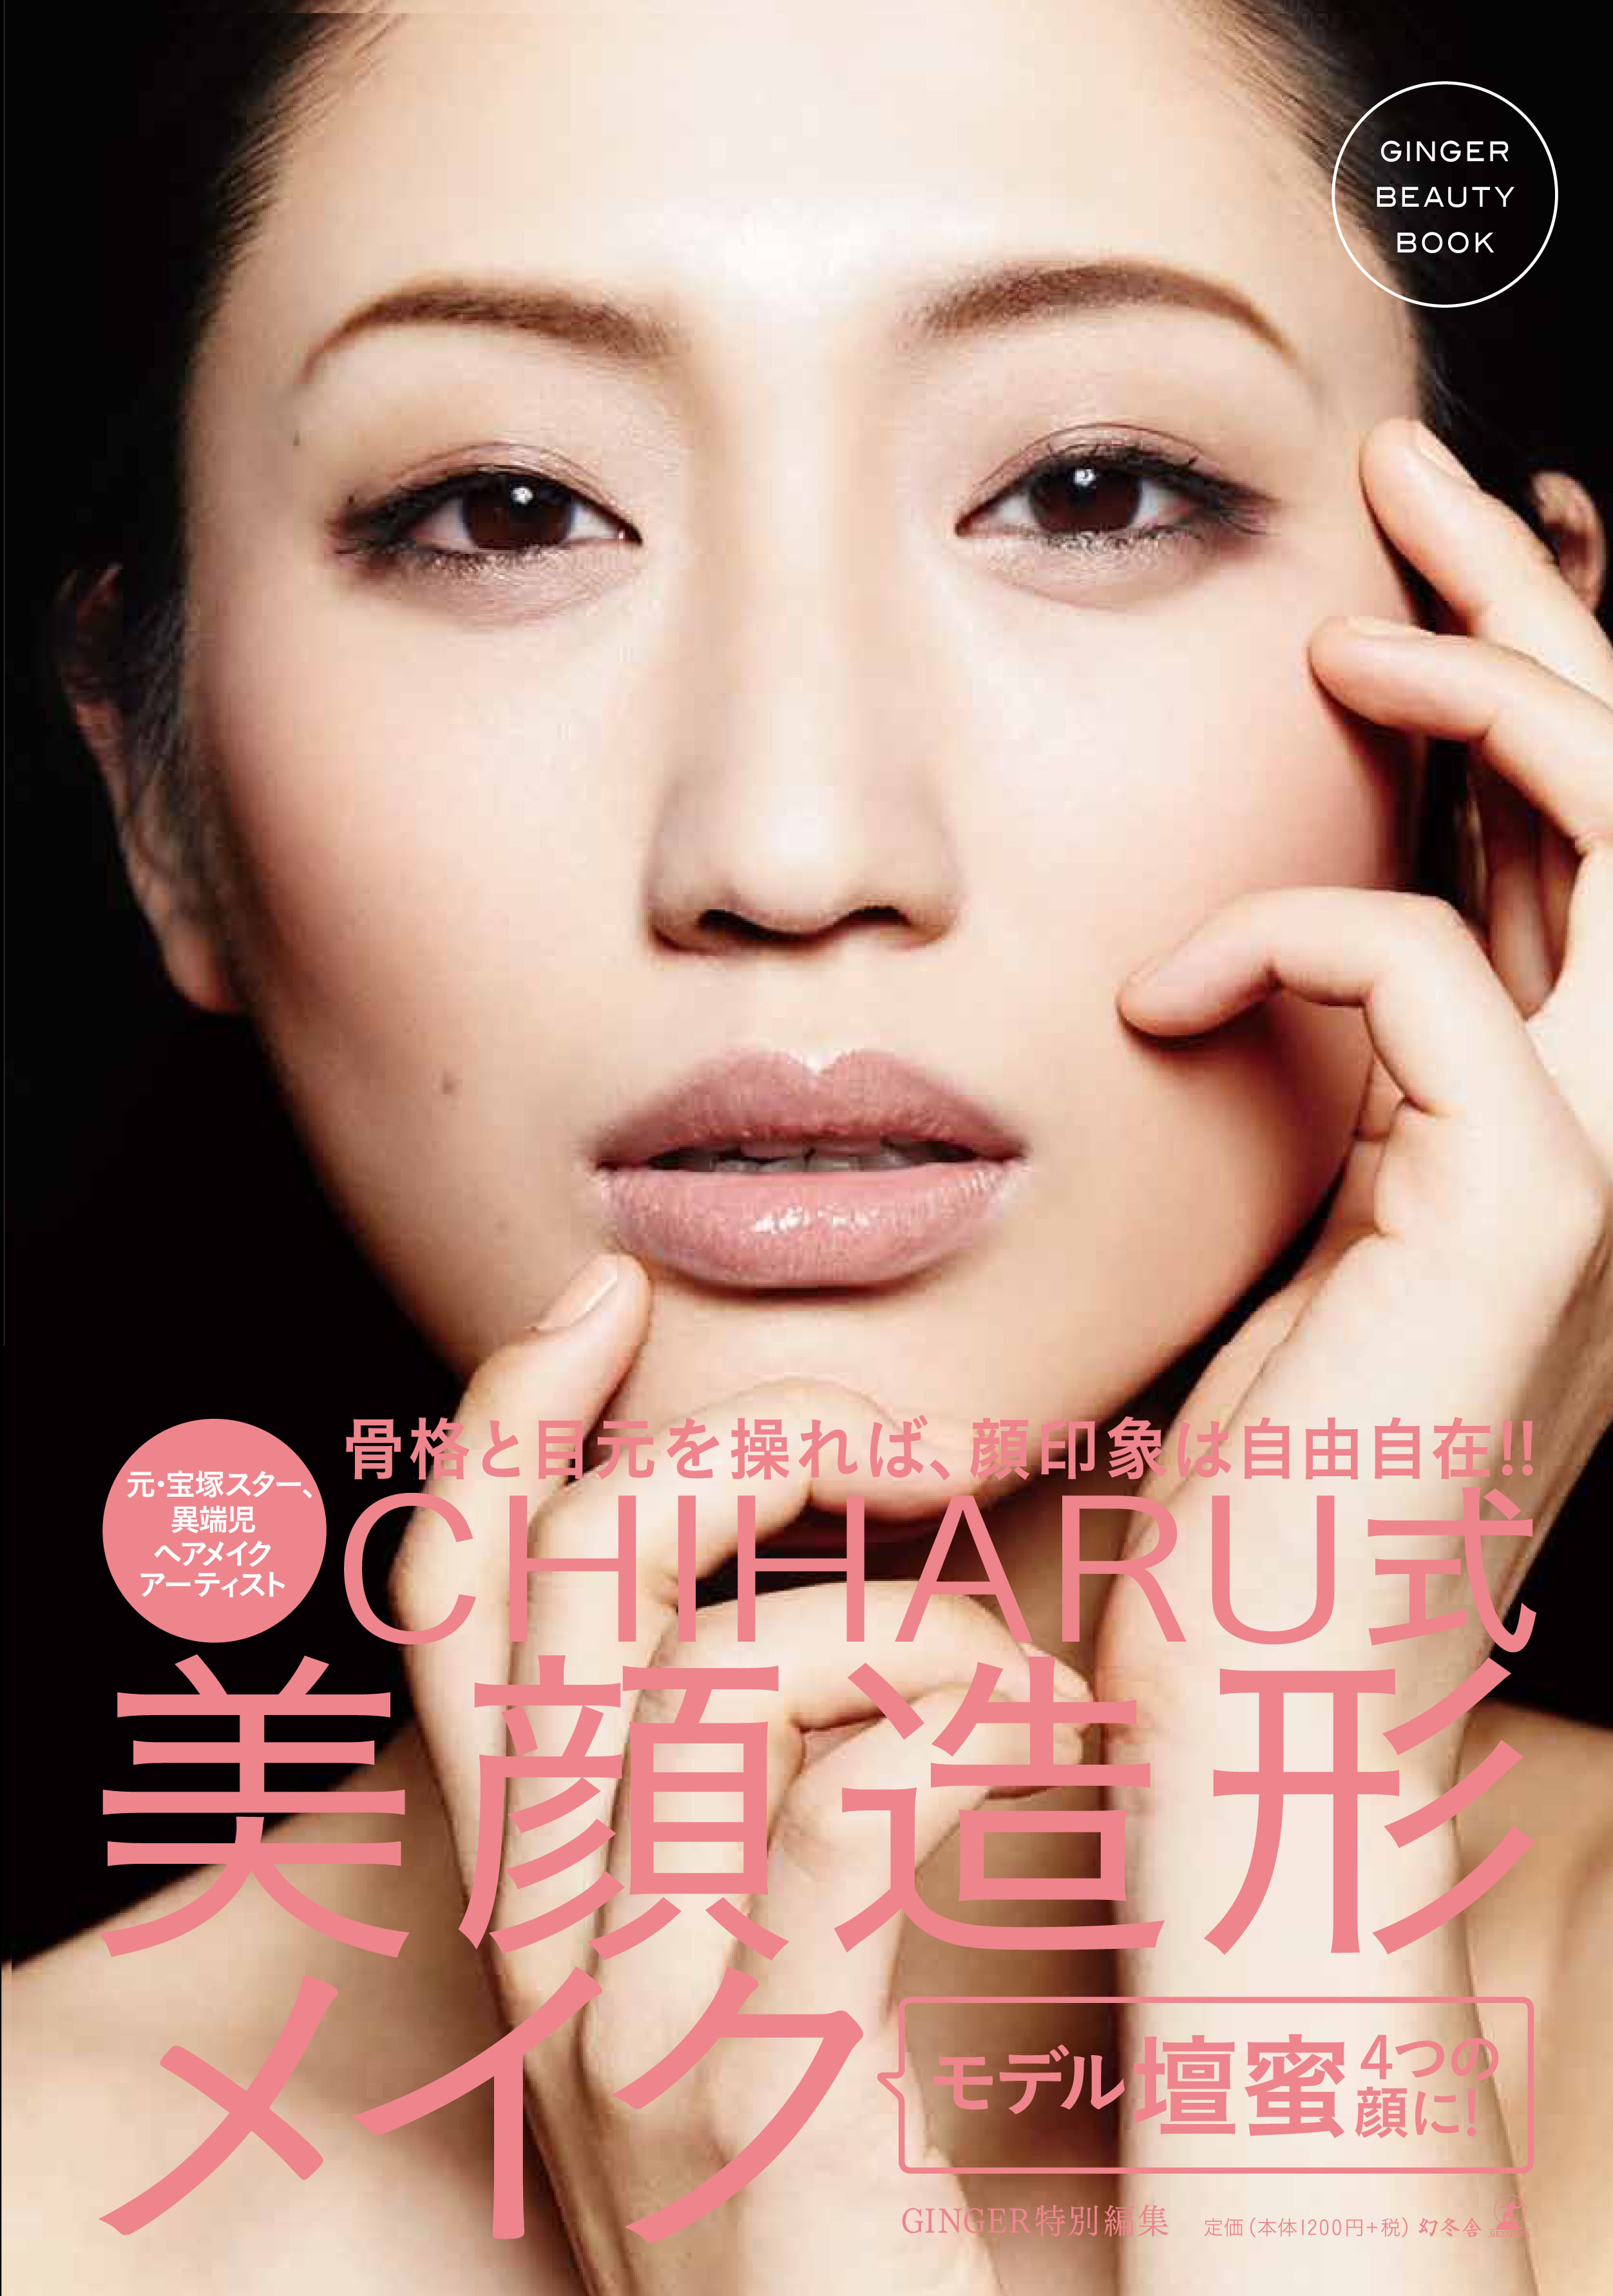 美顔造形した壇蜜さんがメイク本の表紙に登場 株式会社 幻冬舎のプレスリリース